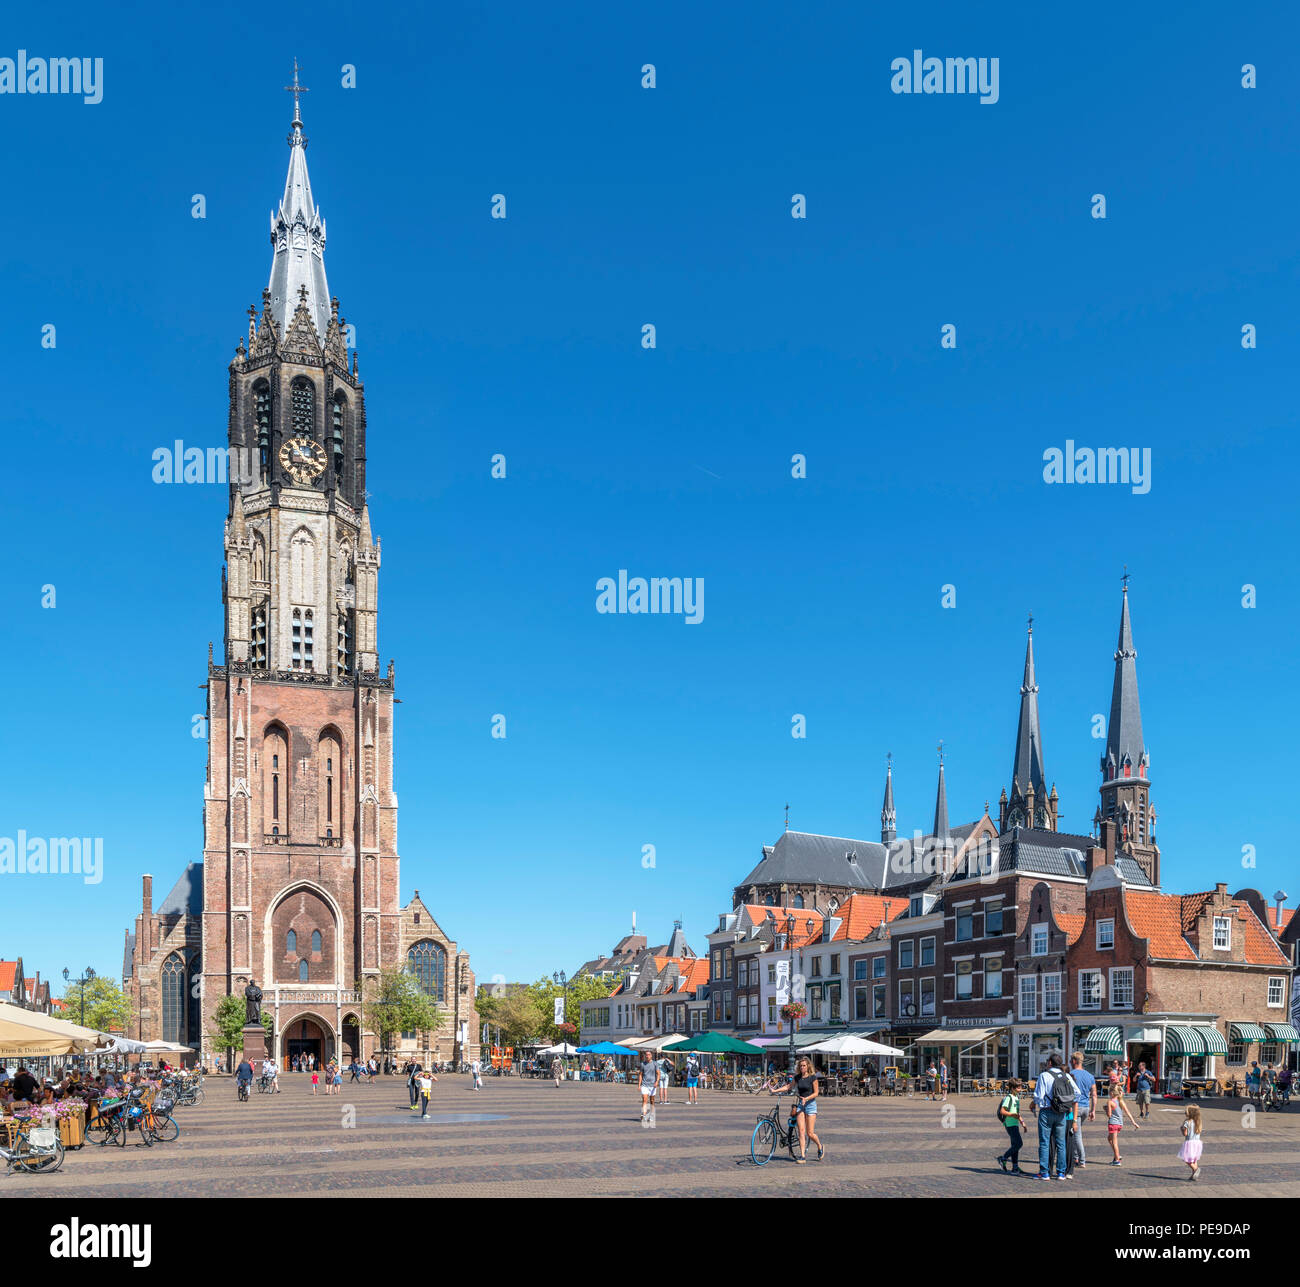 Historique La 15e siècle Nieuwe Kerk (nouvelle église) dans le Markt (place du marché), Delft, Zuid-Holland (Hollande méridionale), Pays-Bas Banque D'Images